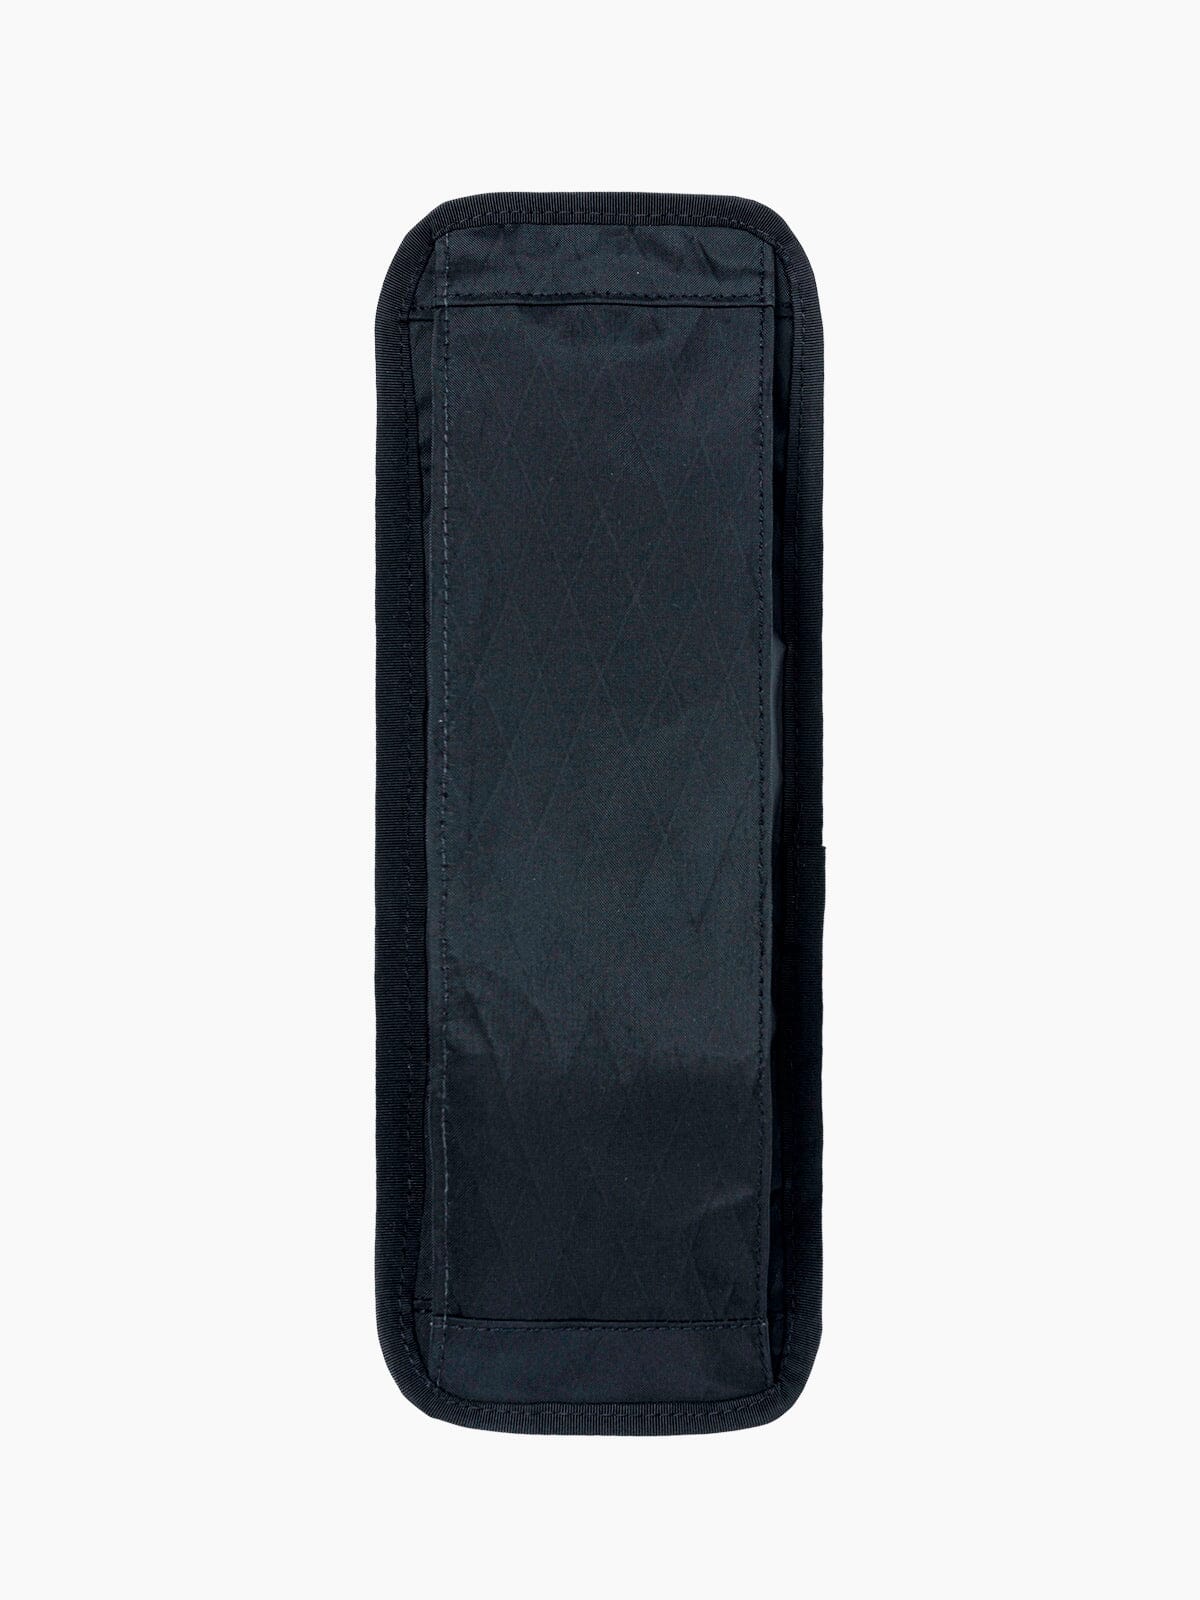 Arkiv Vertikale Reißverschlusstasche von Mission Workshop - Wetterfeste Taschen & Technische Bekleidung - San Francisco & Los Angeles - Für die Ewigkeit gebaut - Garantiert